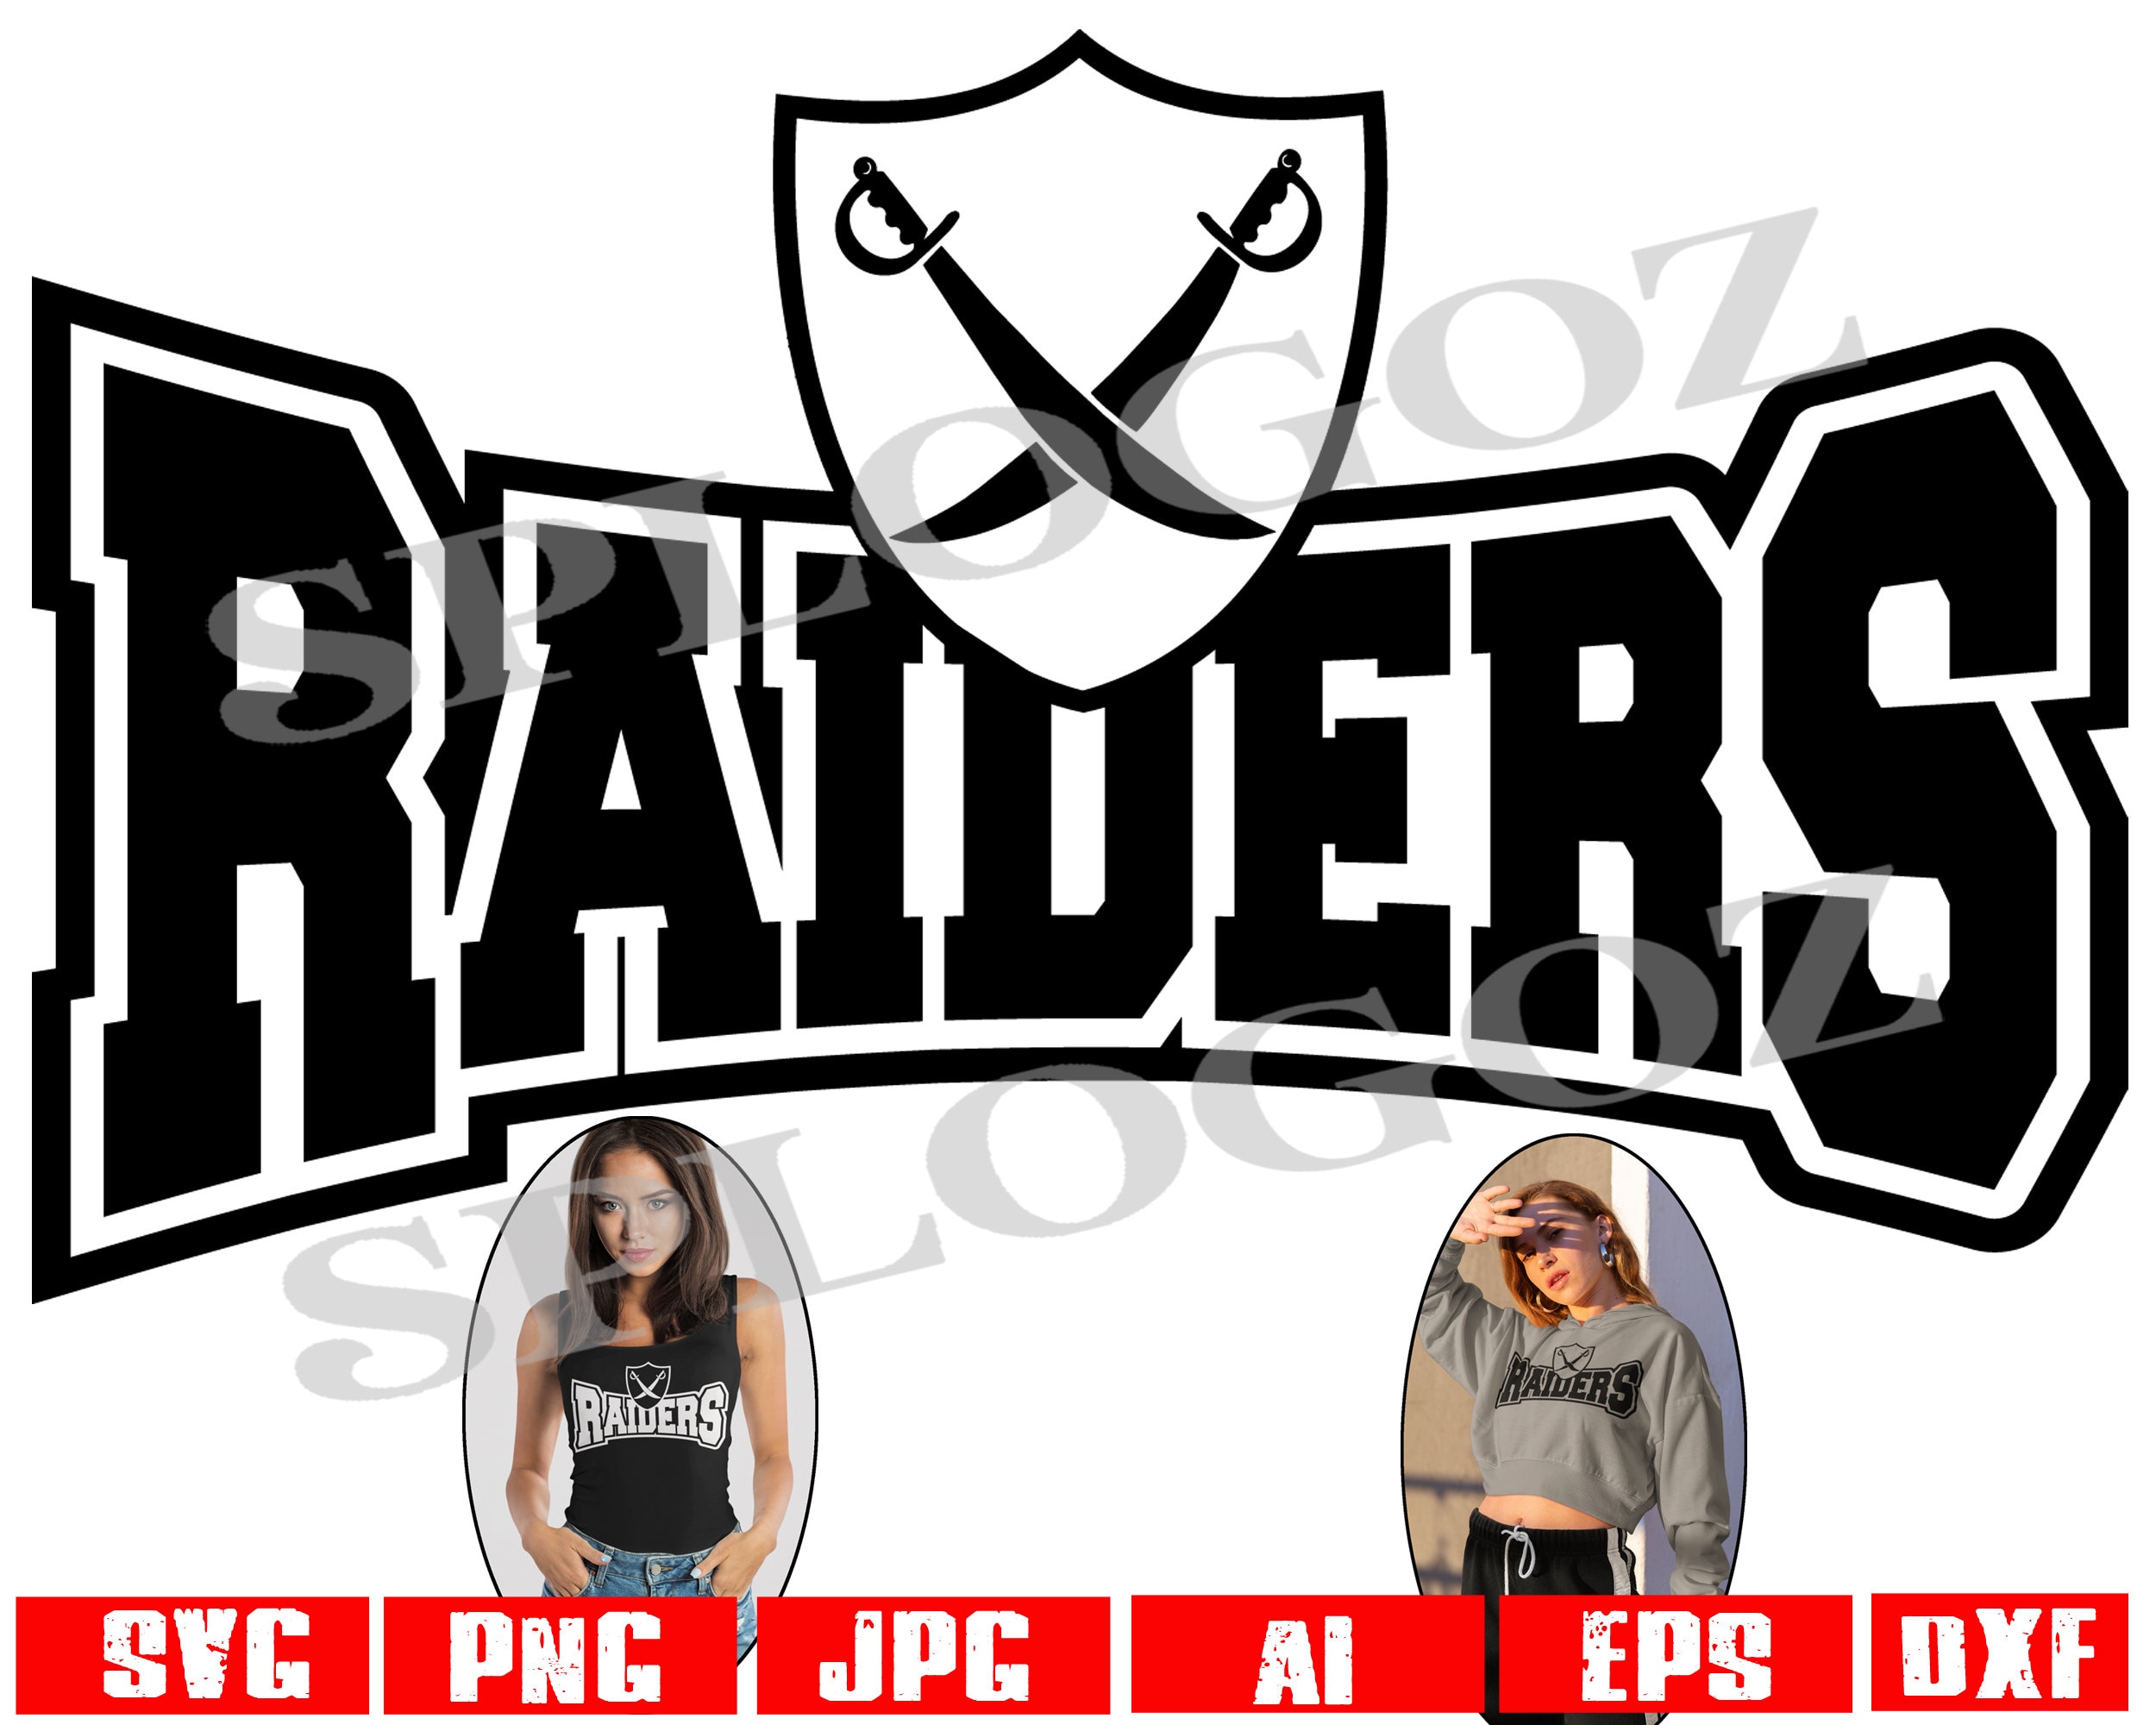 Raiders Svg Raider Svg Raiders Png Raider Png Downloadable 